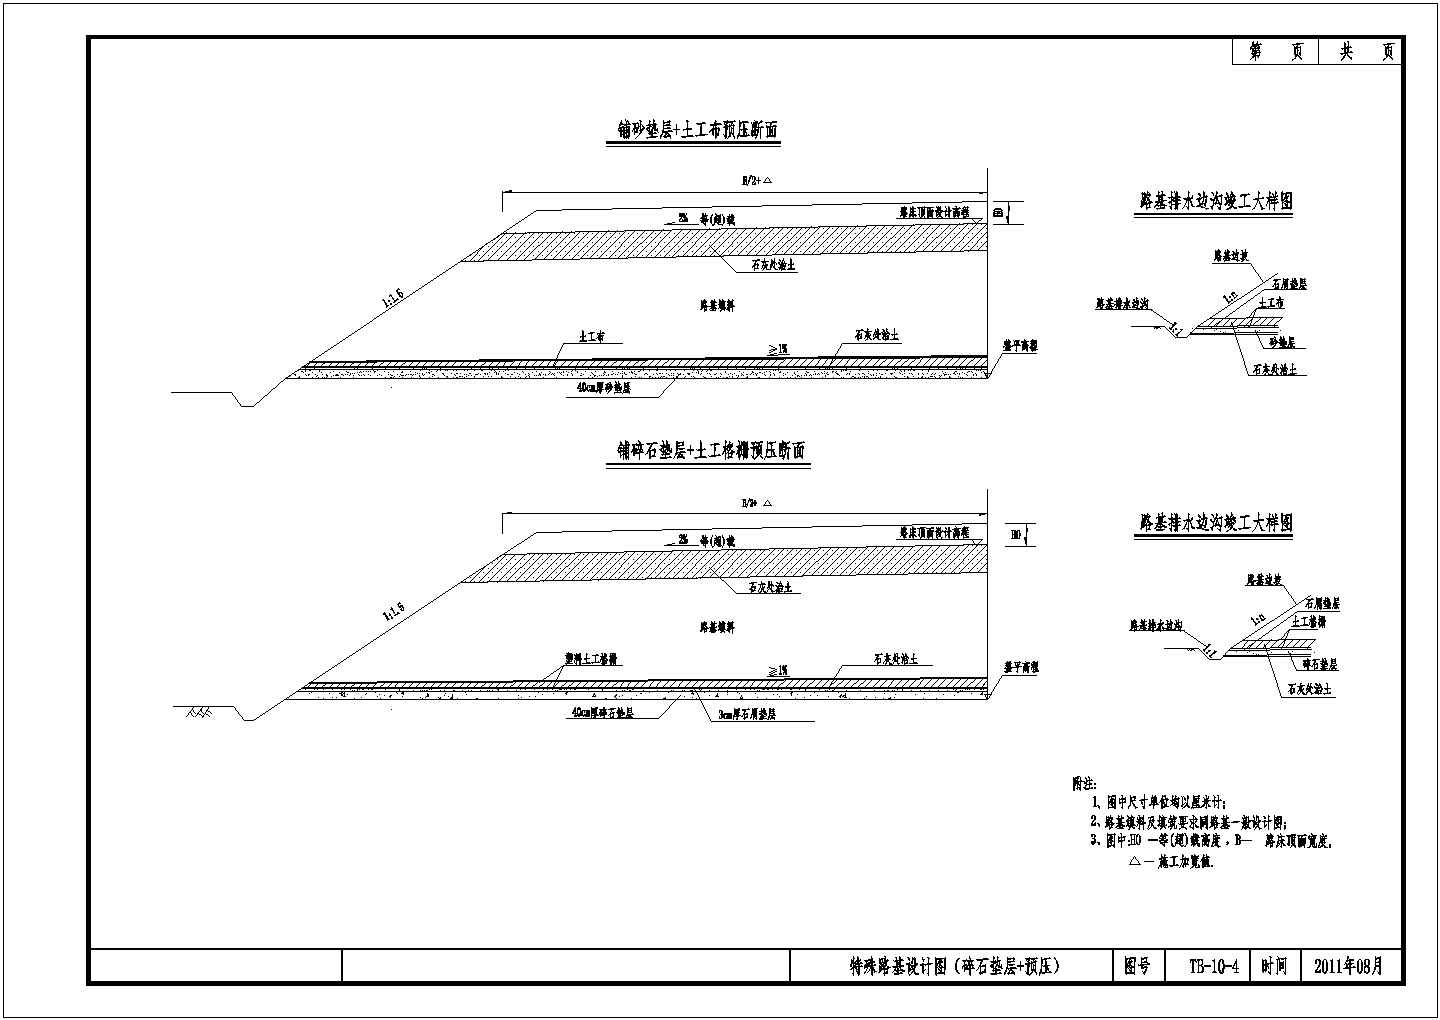 公路改造工程特殊路基(碎石垫层+预压)节点详图设计